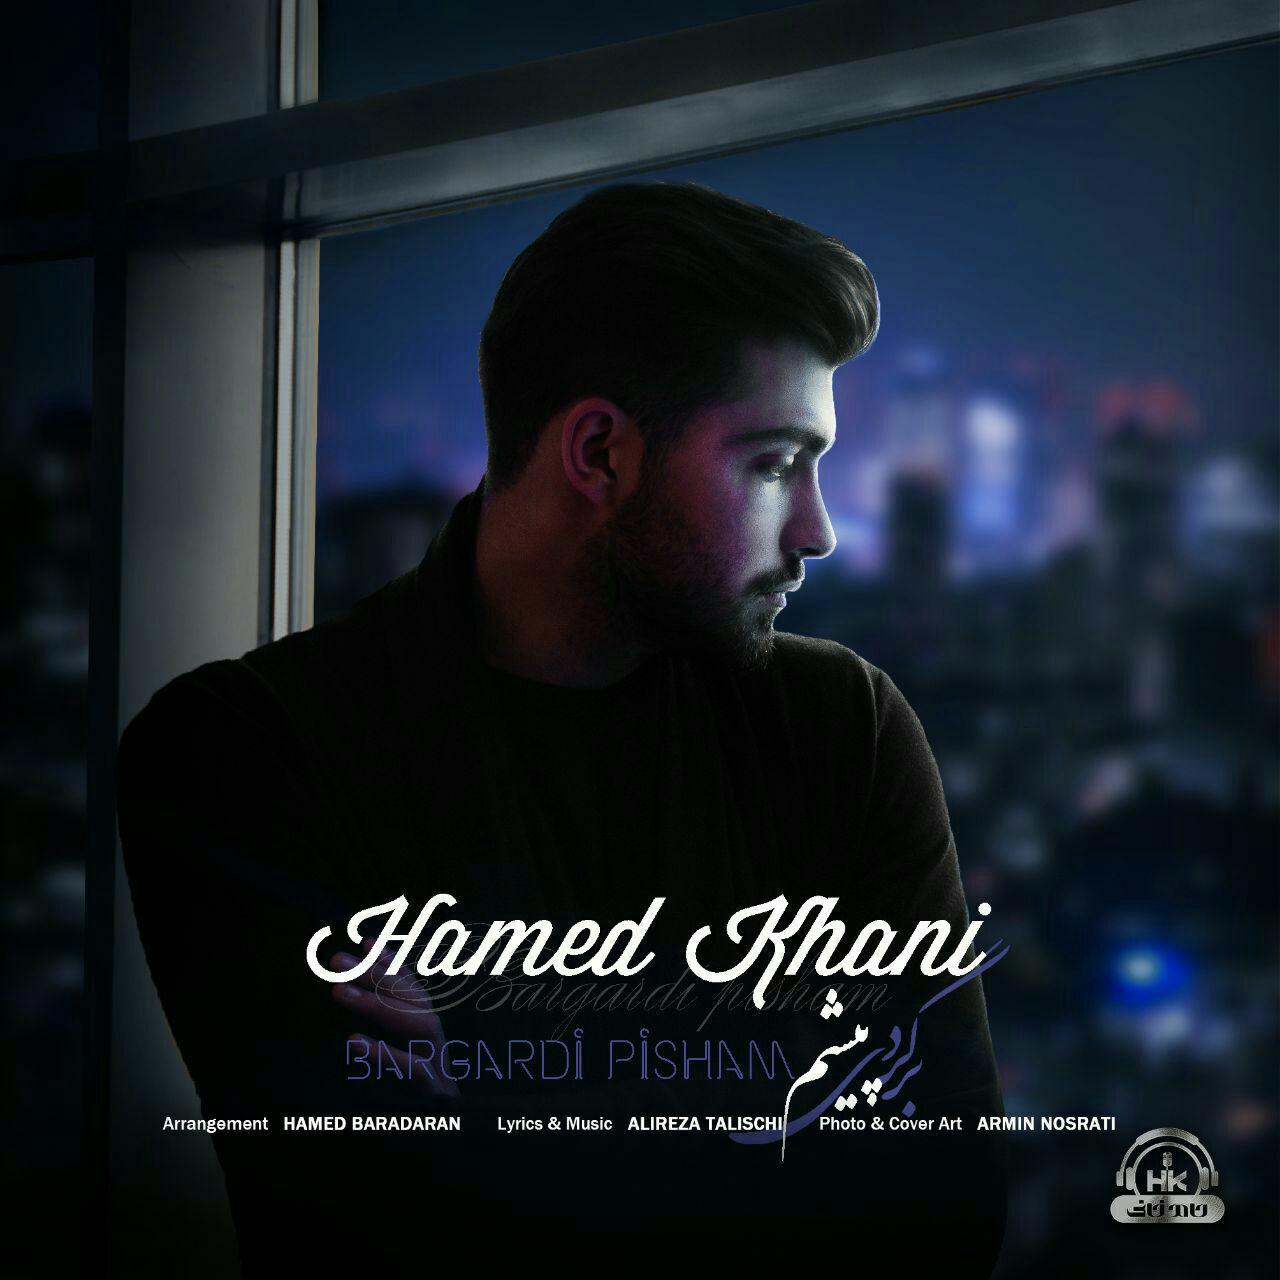  دانلود آهنگ جدید حامد خانی - برگردی پیشم | Download New Music By Hamed Khani - Bargardi Pisham